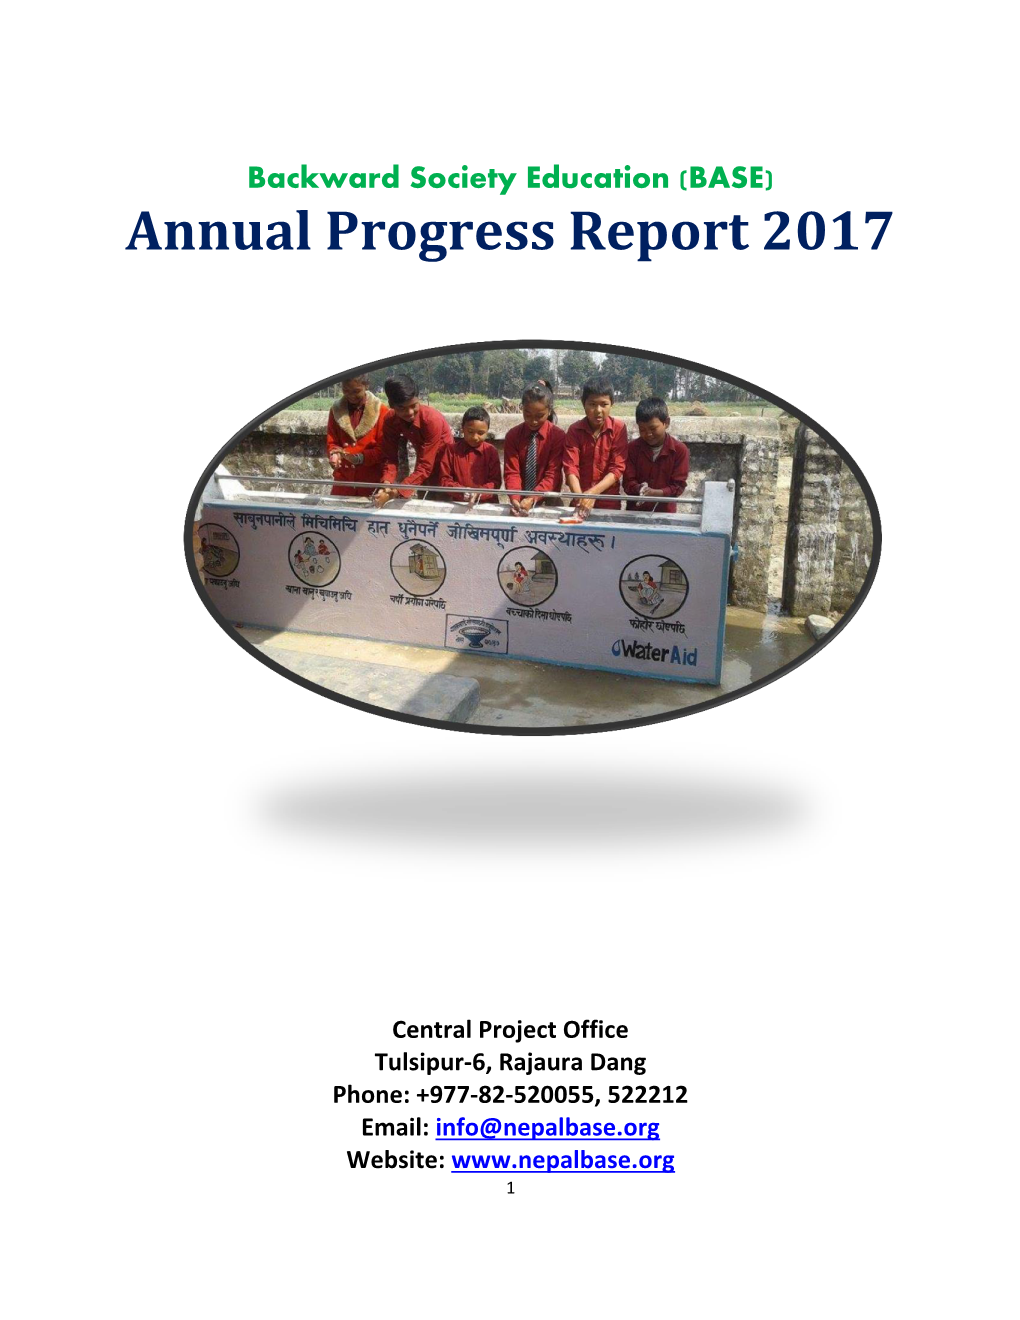 Annual Progress Report 2017